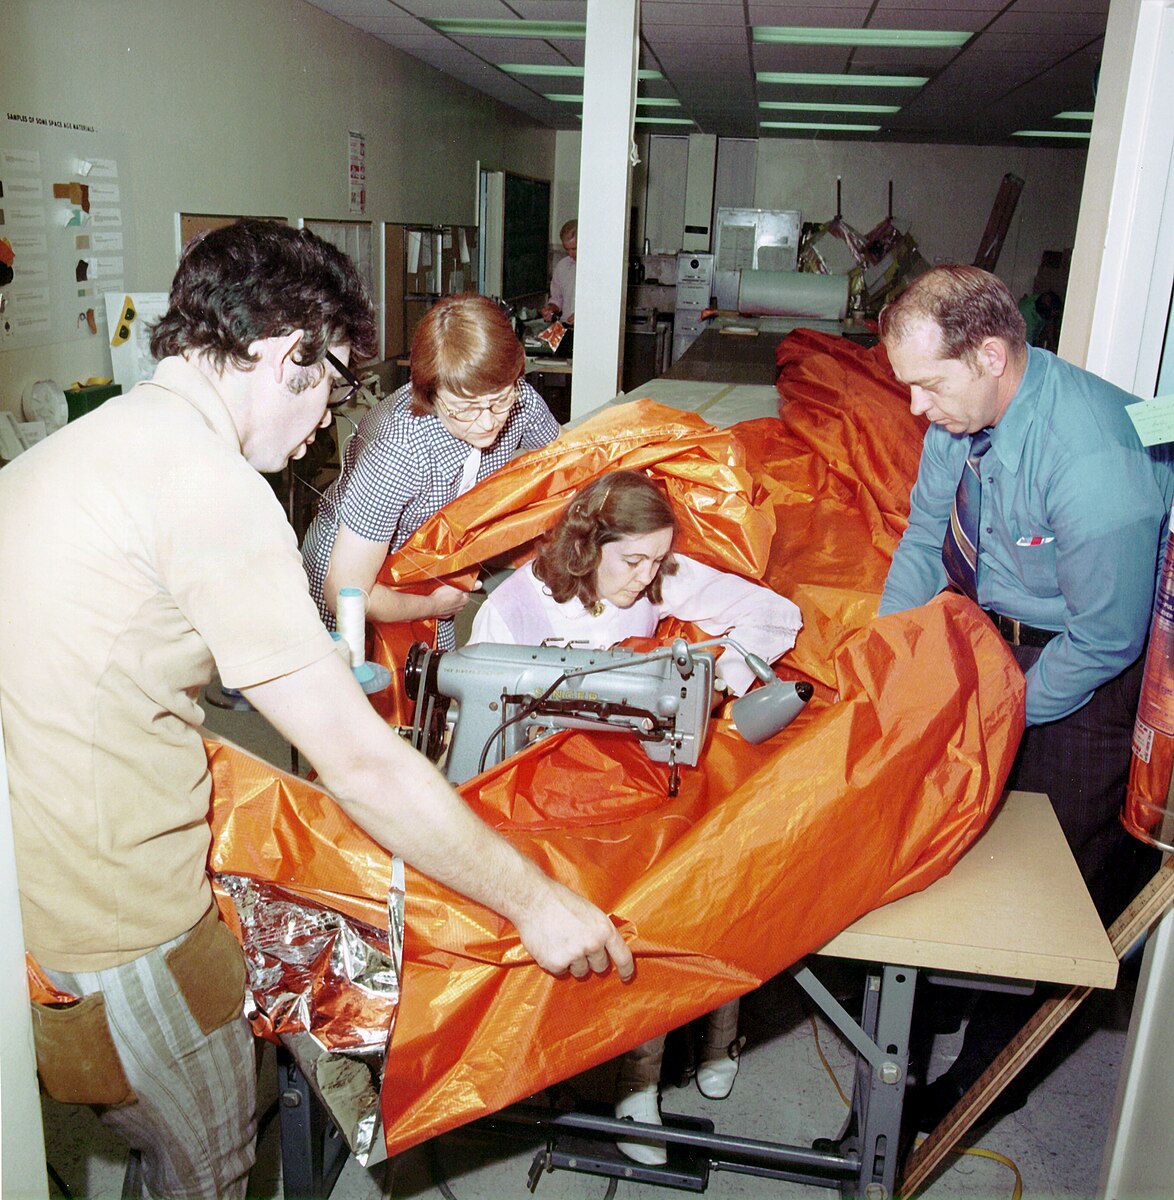 Working on the Skylab sunscreen, from left to right: Dale Gentry, Elizabeth Gauldin, Alyene Baker, and James H. Barnett Jr.; image via Wikimedia Commons